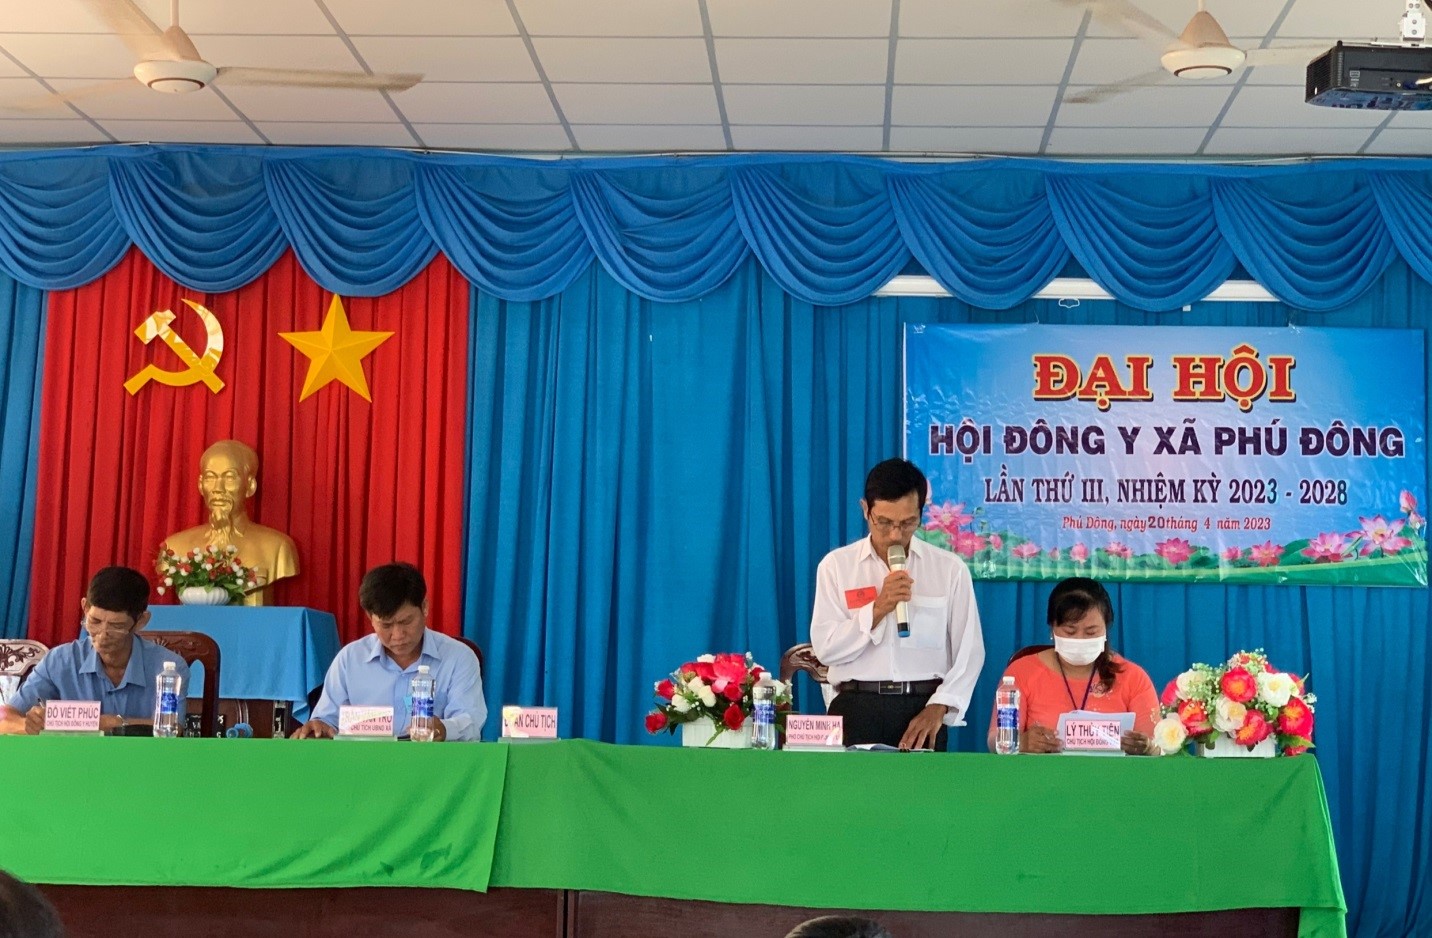 Đại hội Hội Đông y xã Phú Đông lần III nhiệm kỳ 2023-2028